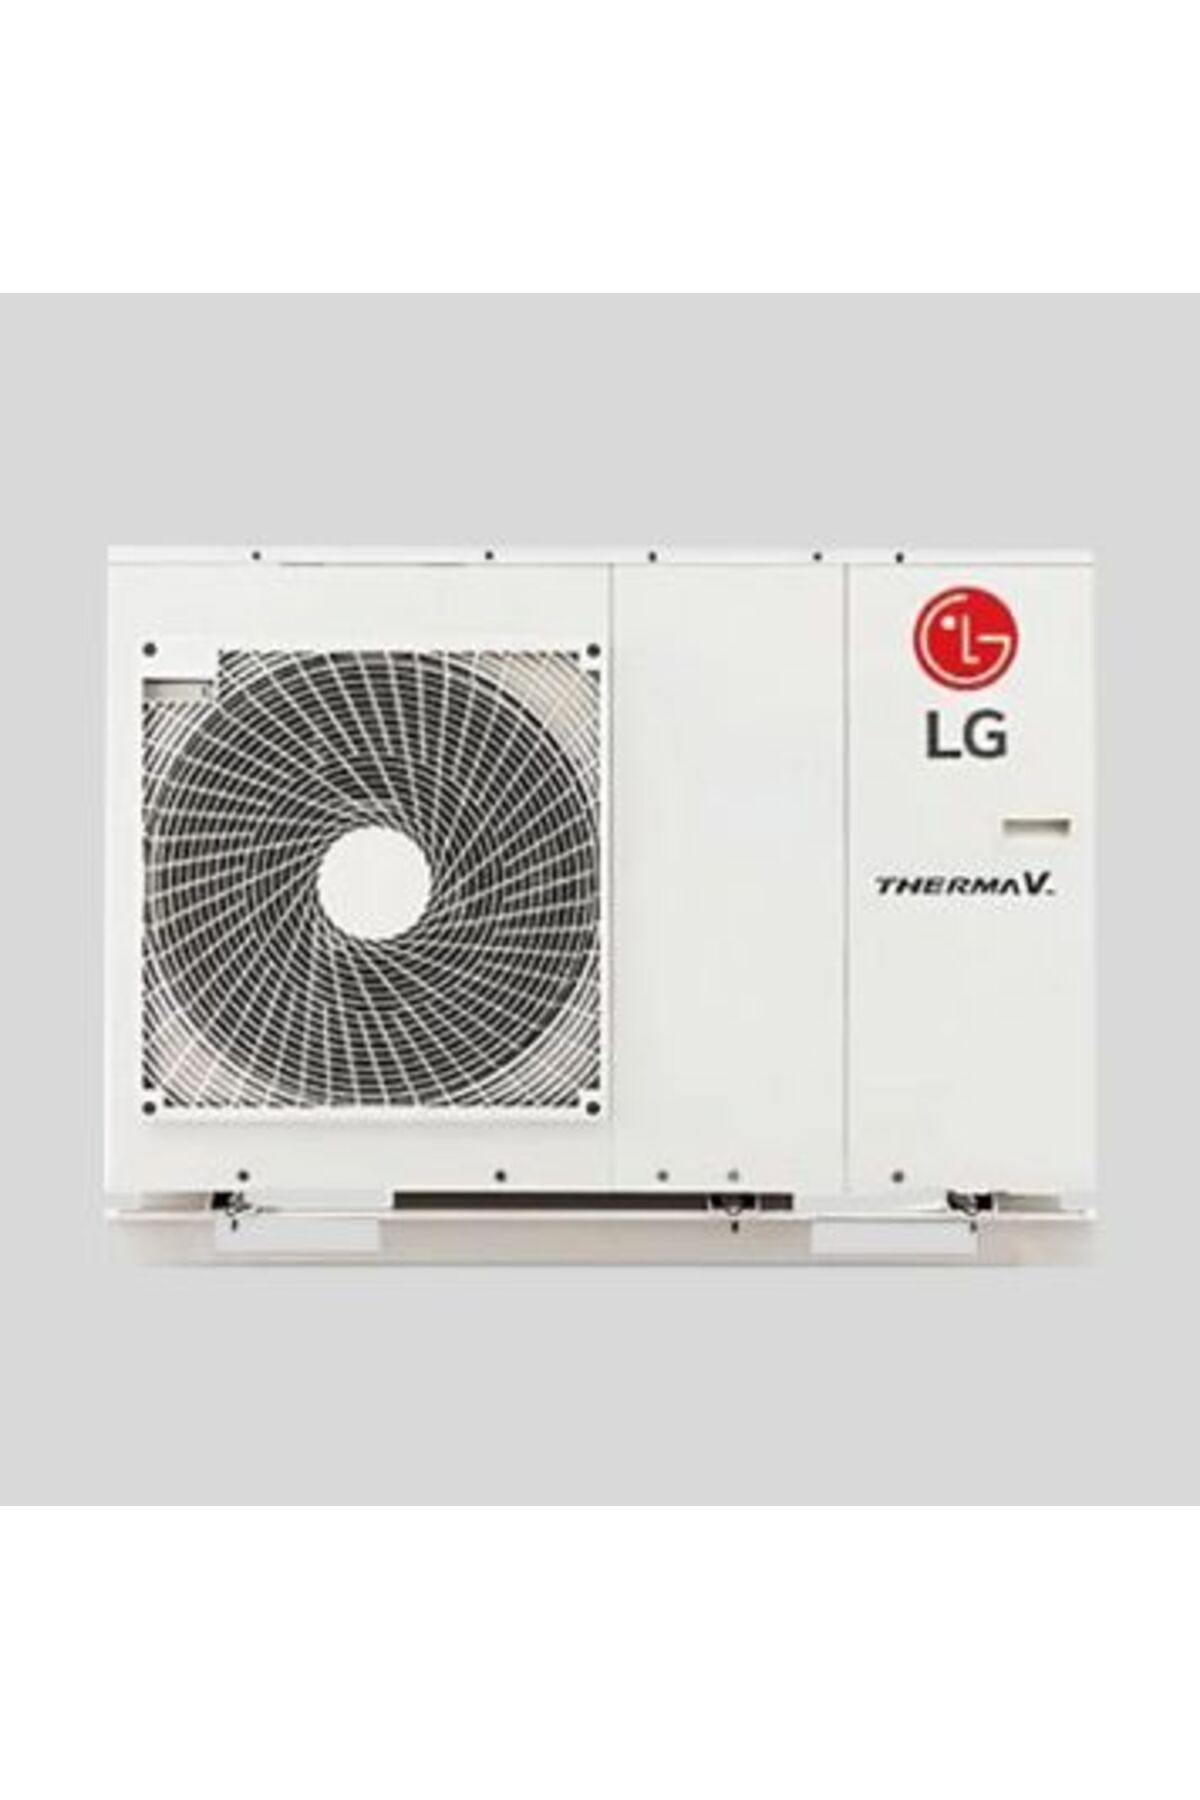 LG Therma 9 Kw Monoblok Inverter Wifi Hediyeli Isı Pompası R32 S Serisi